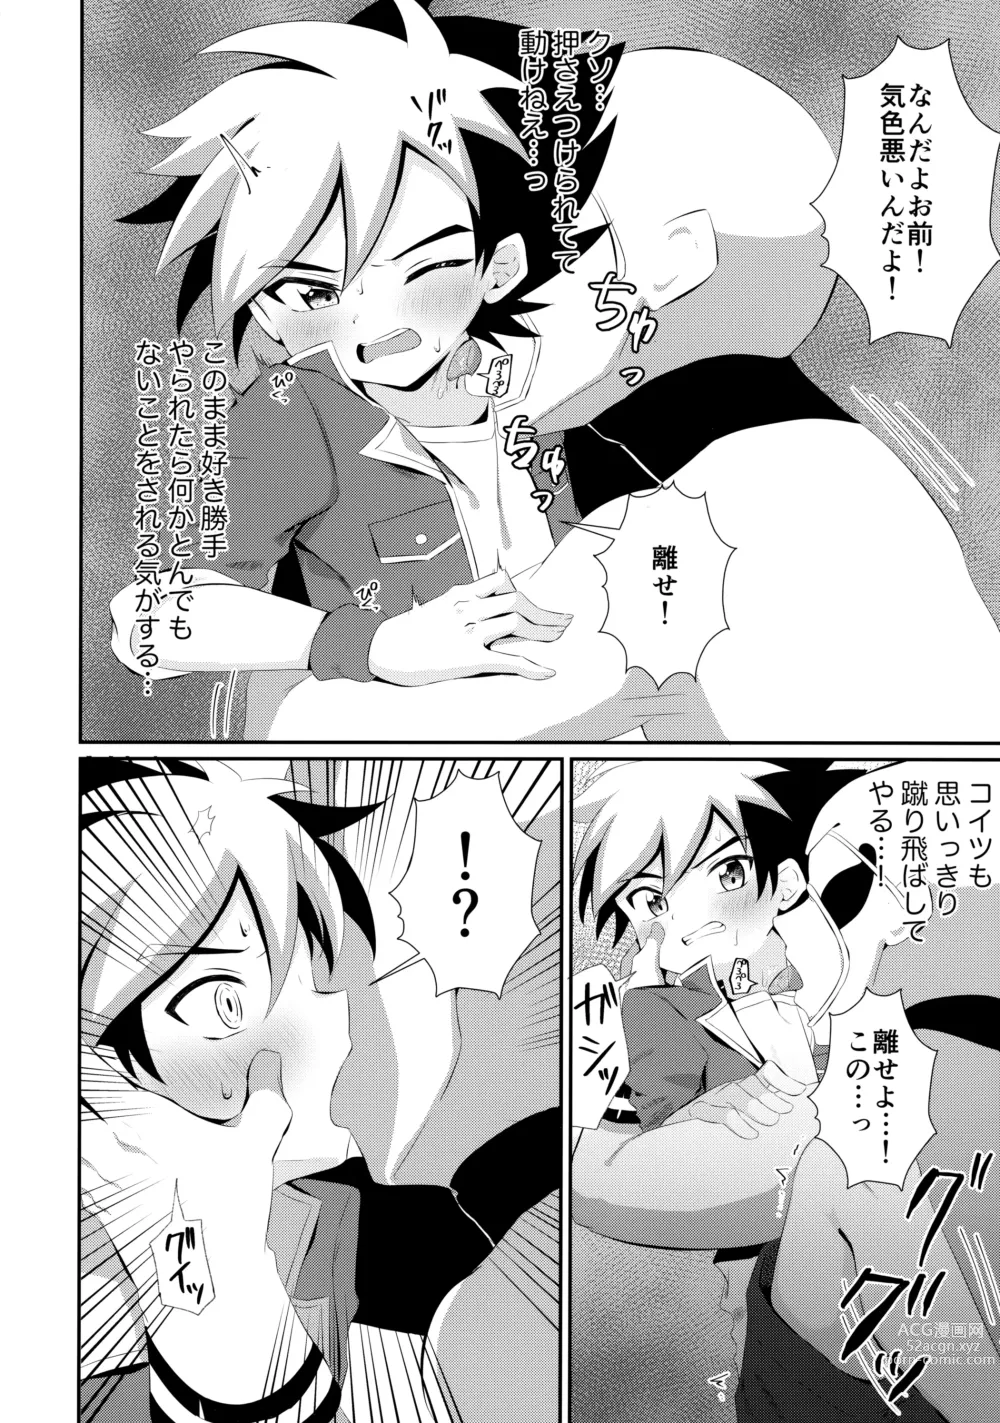 Page 9 of doujinshi Ryuuseisan ga Hikyouna Otona Bougubatora Nanka ni Makeru wake ga Nai!